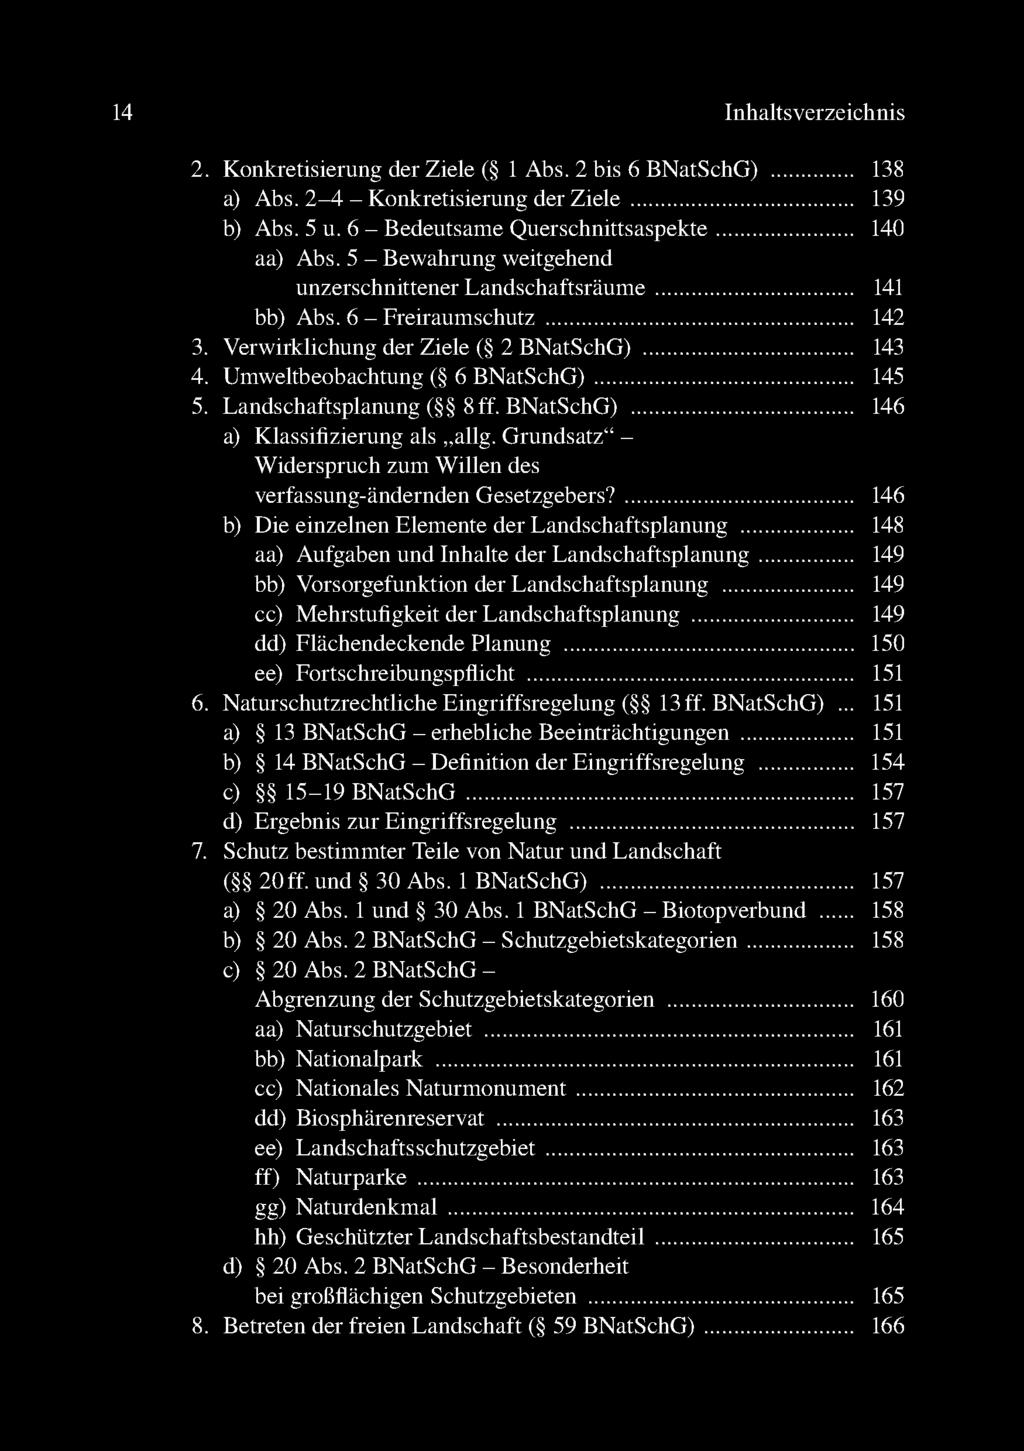 14 Inhaltsverzeichnis 2. Konkretisierung der Ziele ( 1 Abs. 2 bis 6 BNatSchG)...138 a) Abs. 2-4 - Konkretisierung der Z iele.....139 b) Abs. 5 u. 6 - Bedeutsame Querschnittsaspekte.....140 aa) Abs.